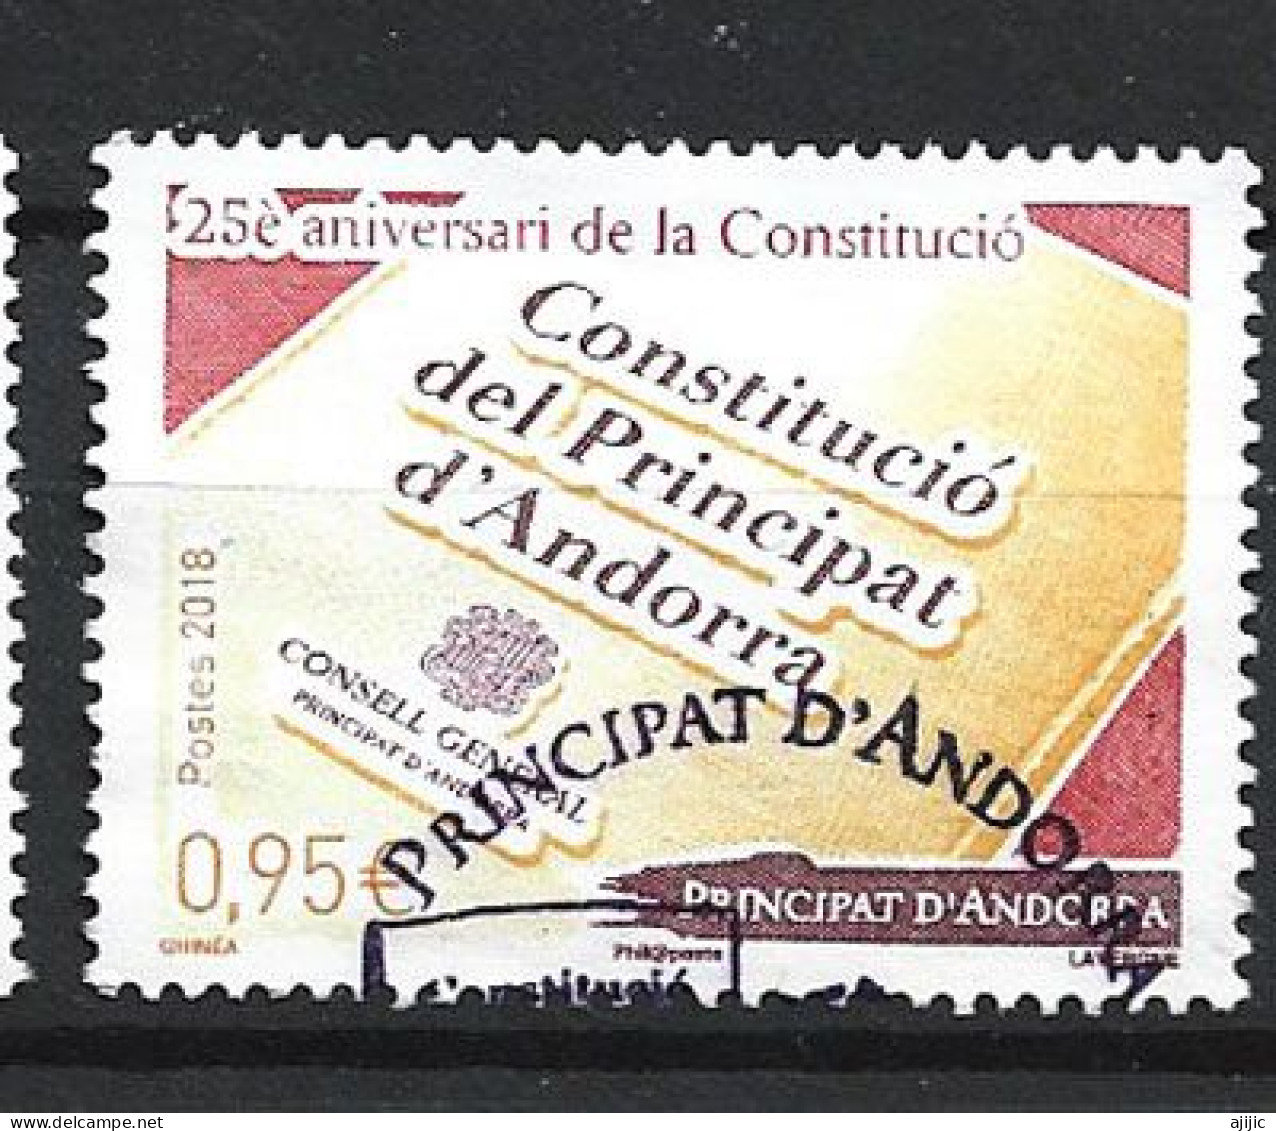 ANDORRA. La Nouvelle Constitution D'Andorre (25 Ième Anniversaire)  , Un Timbre Oblitéré, 1 ère Qualite (2018) - Used Stamps